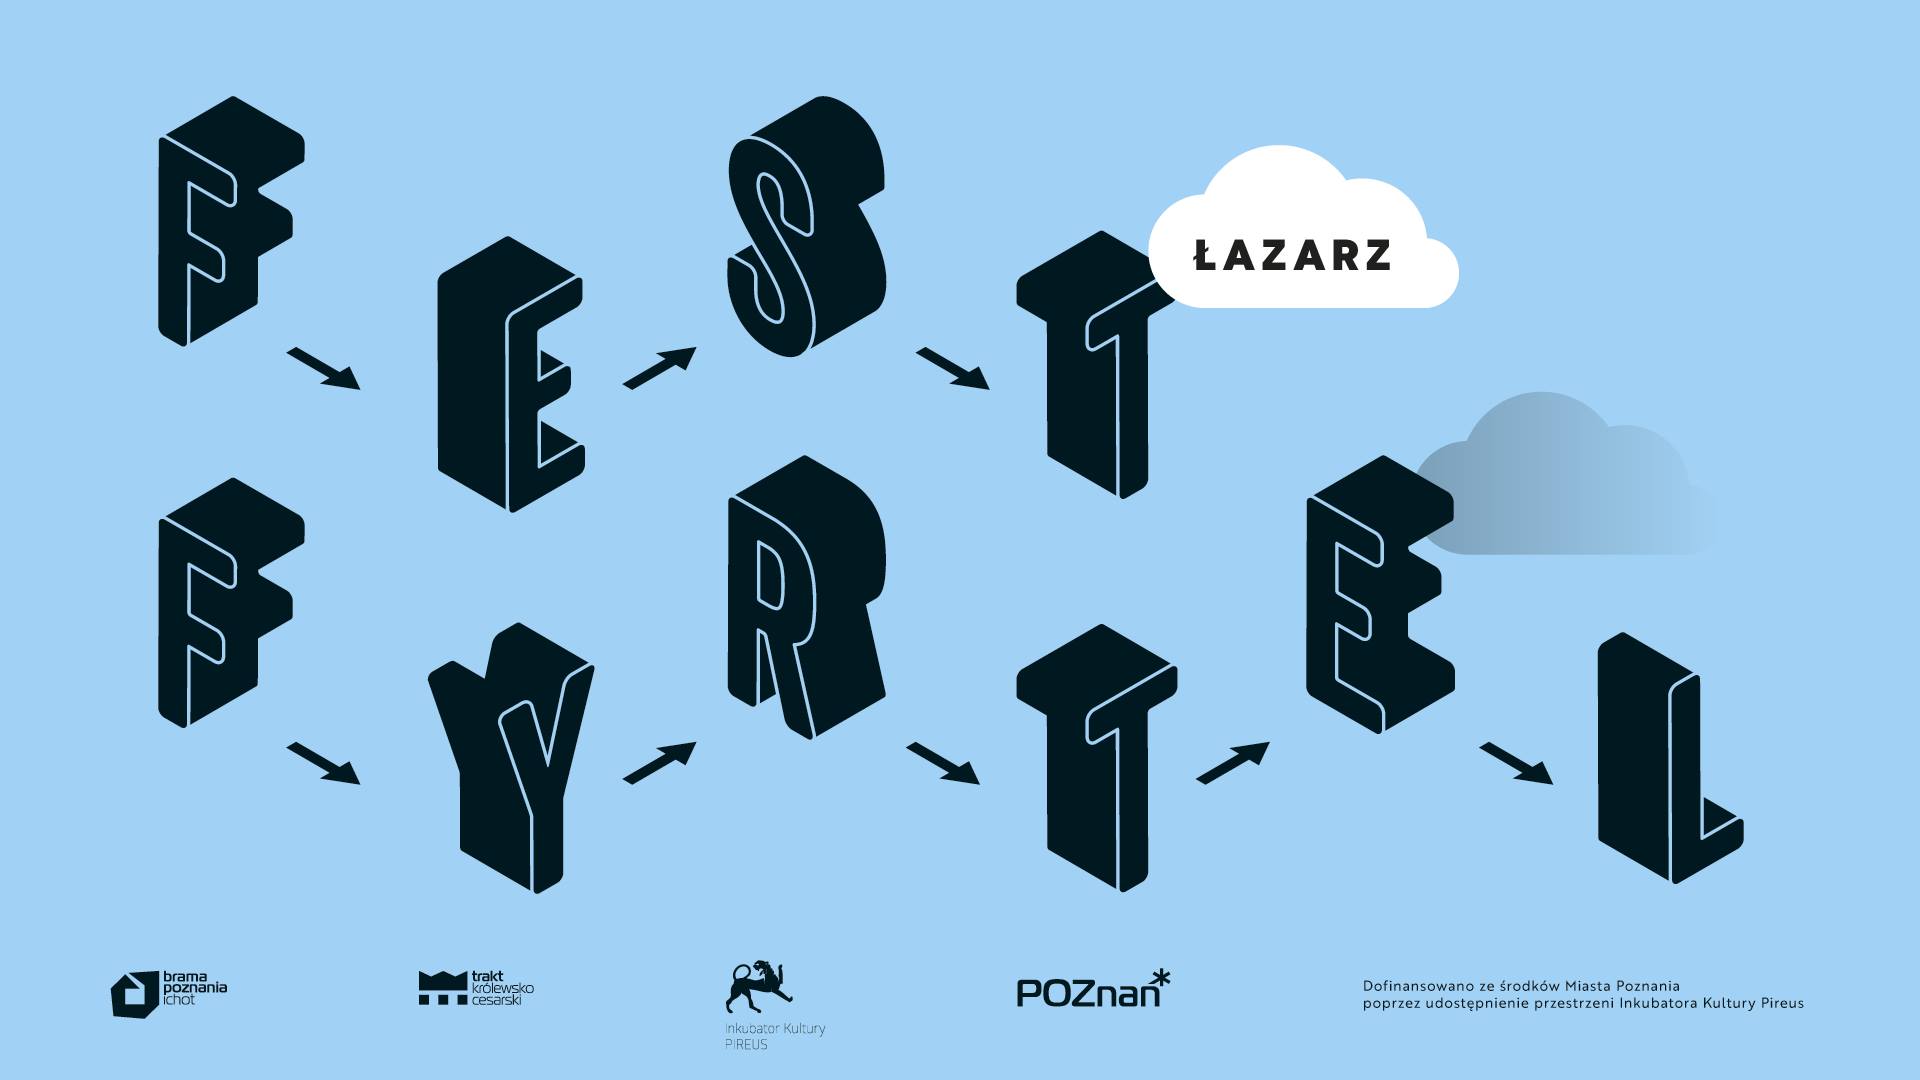 fest - Fest Fyrtel / Łazarz - warsztaty, Facebook